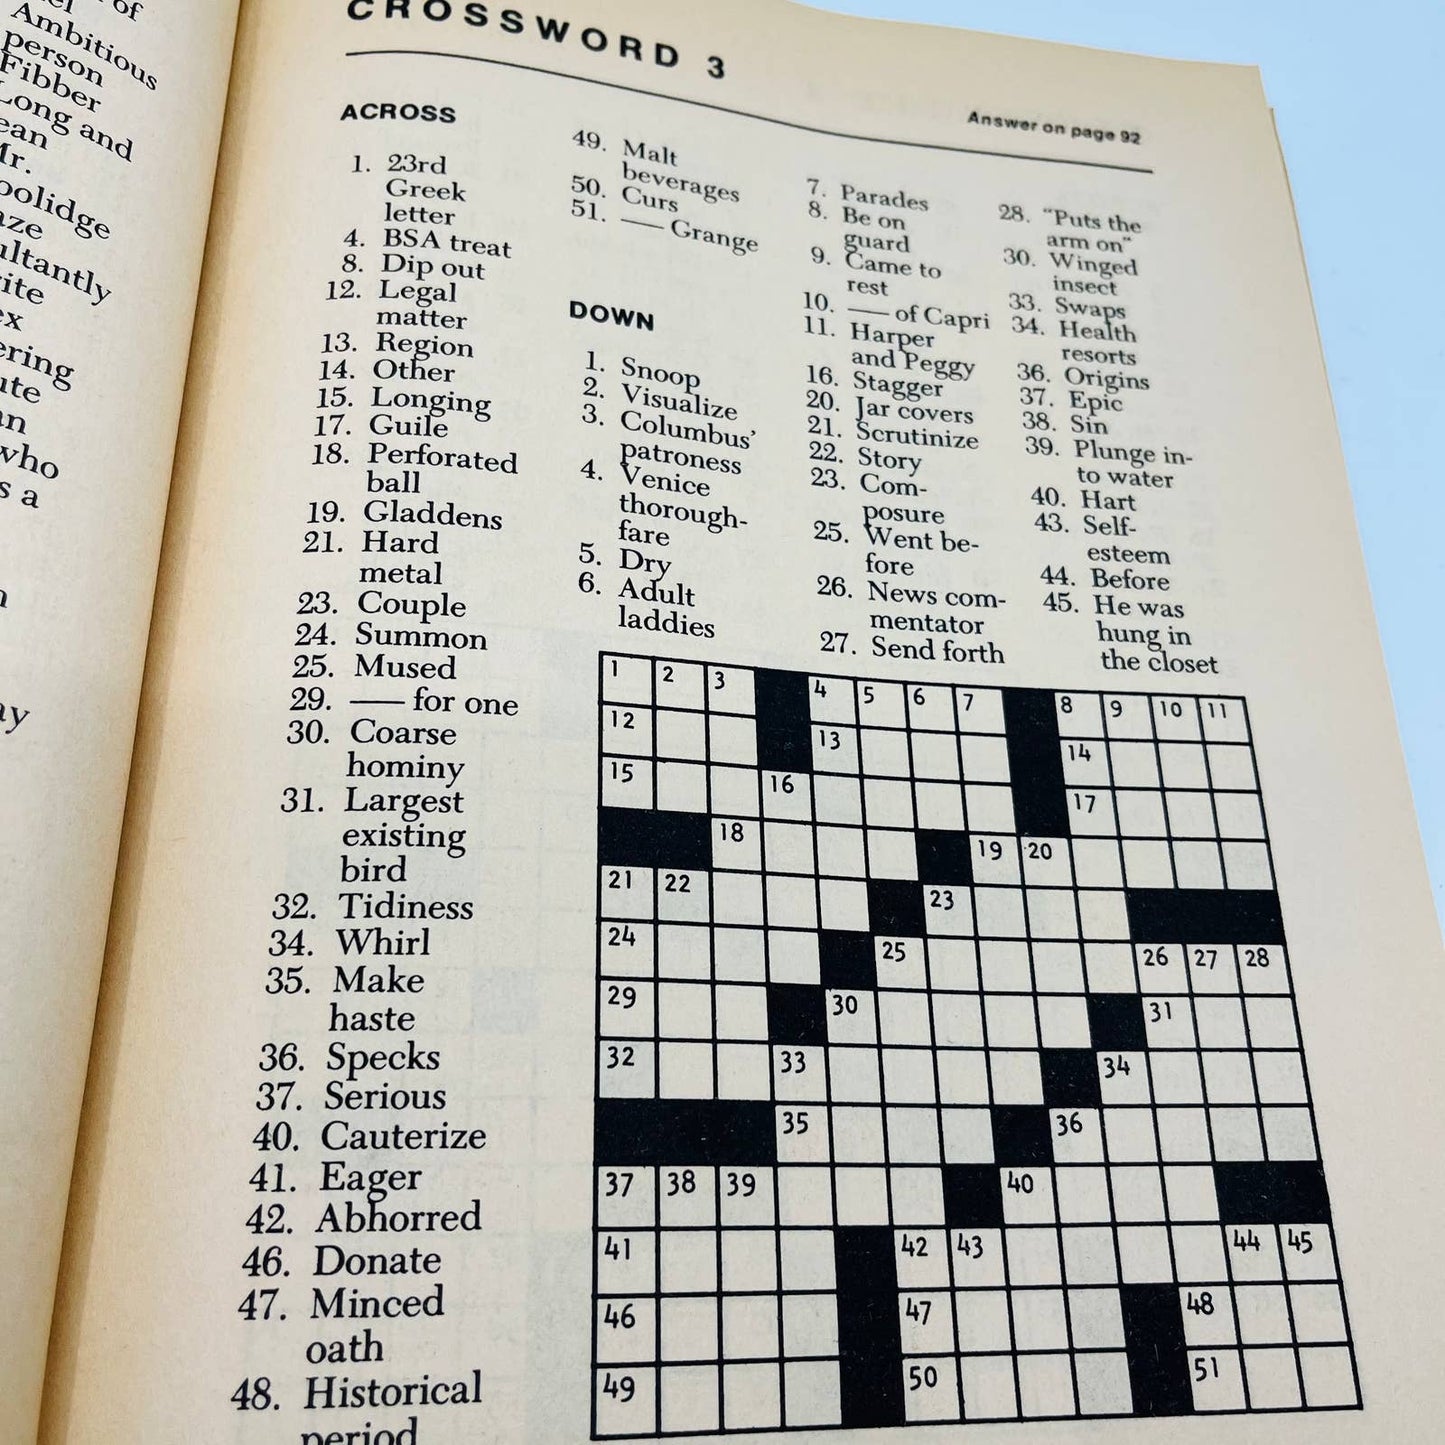 1981 NOS Finest Crossword Puzzles Book No. 4 UNUSED BA4